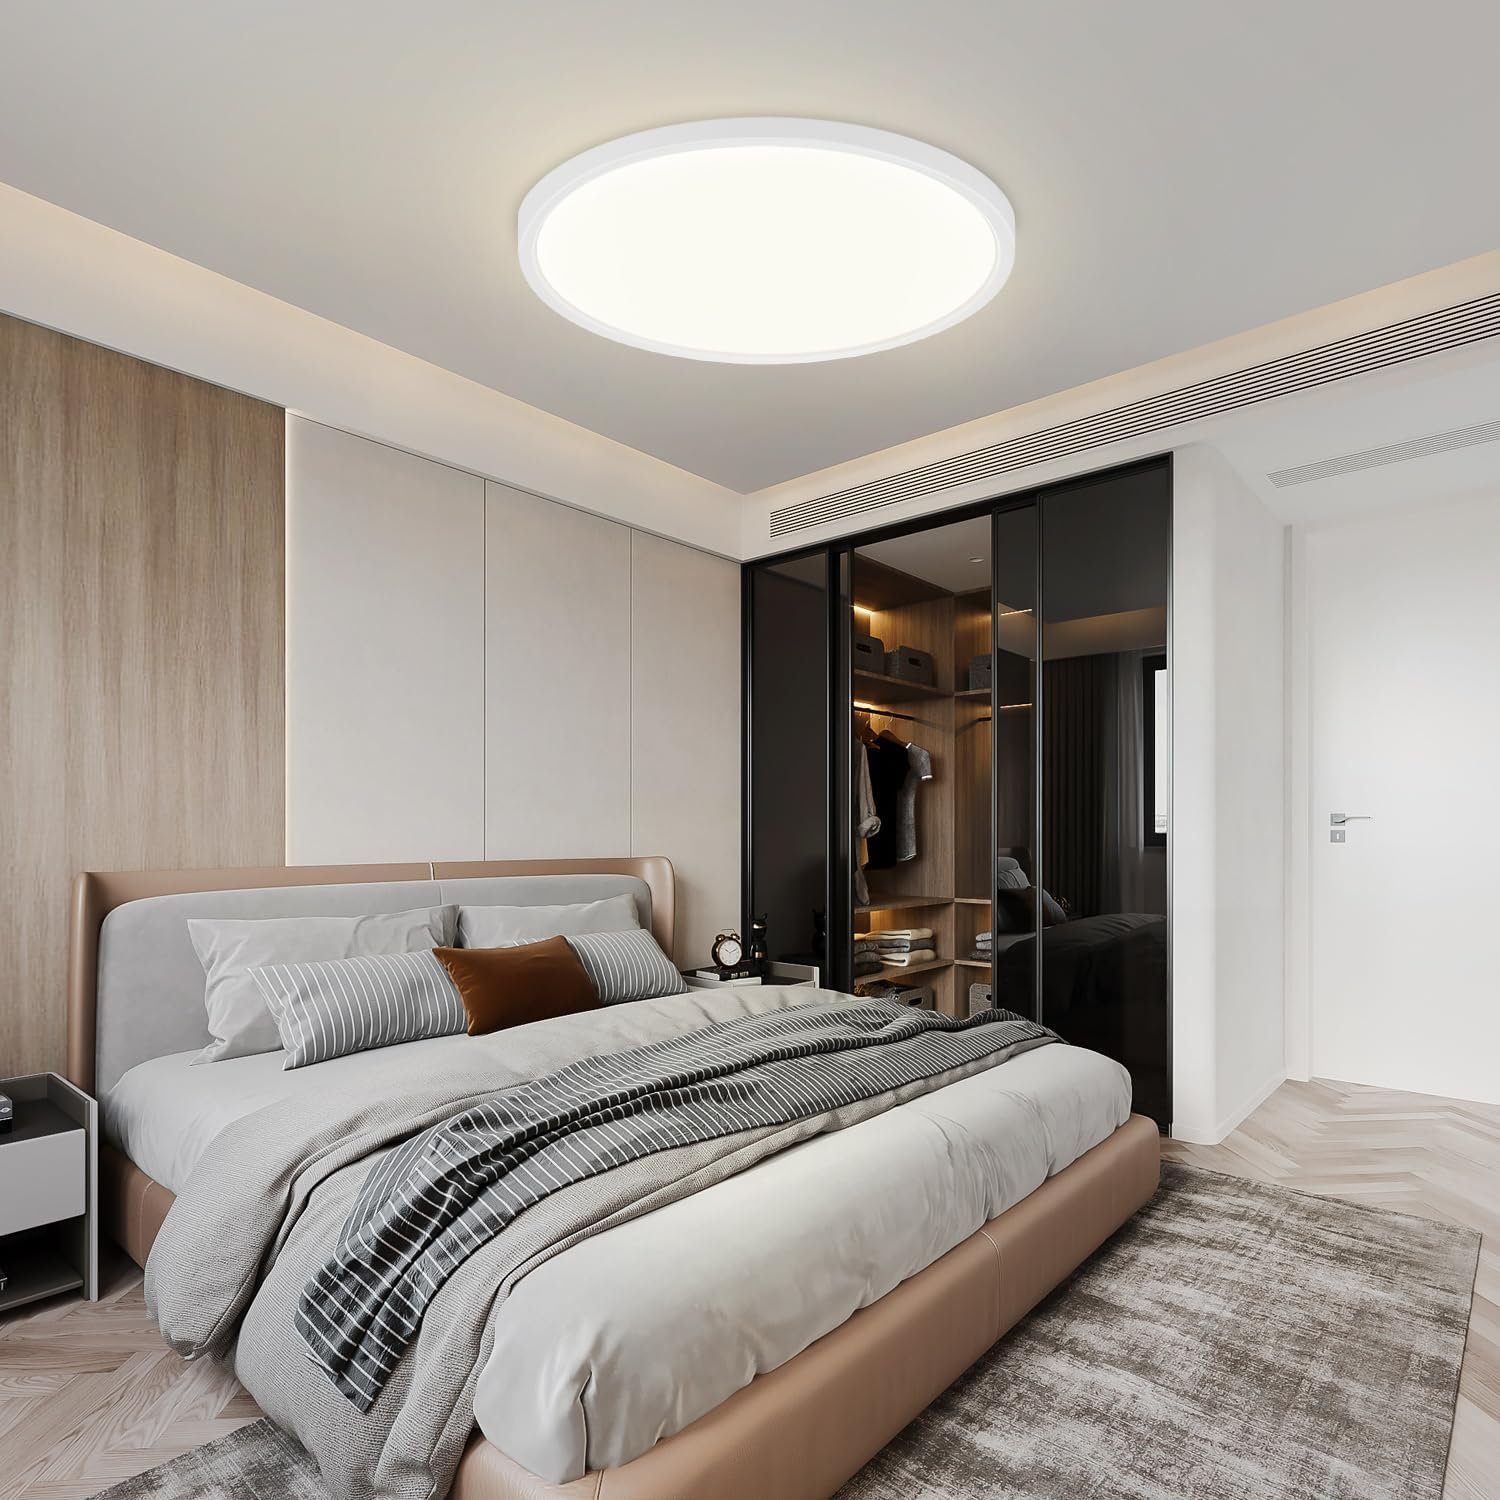 Küche Badezimmer Nettlife Deckenbeleuchtung fest Neutralweiß, Panel Rund, für integriert, Deckenlampe Wasserdicht, LED Flach Schlafzimmer IP44 LED